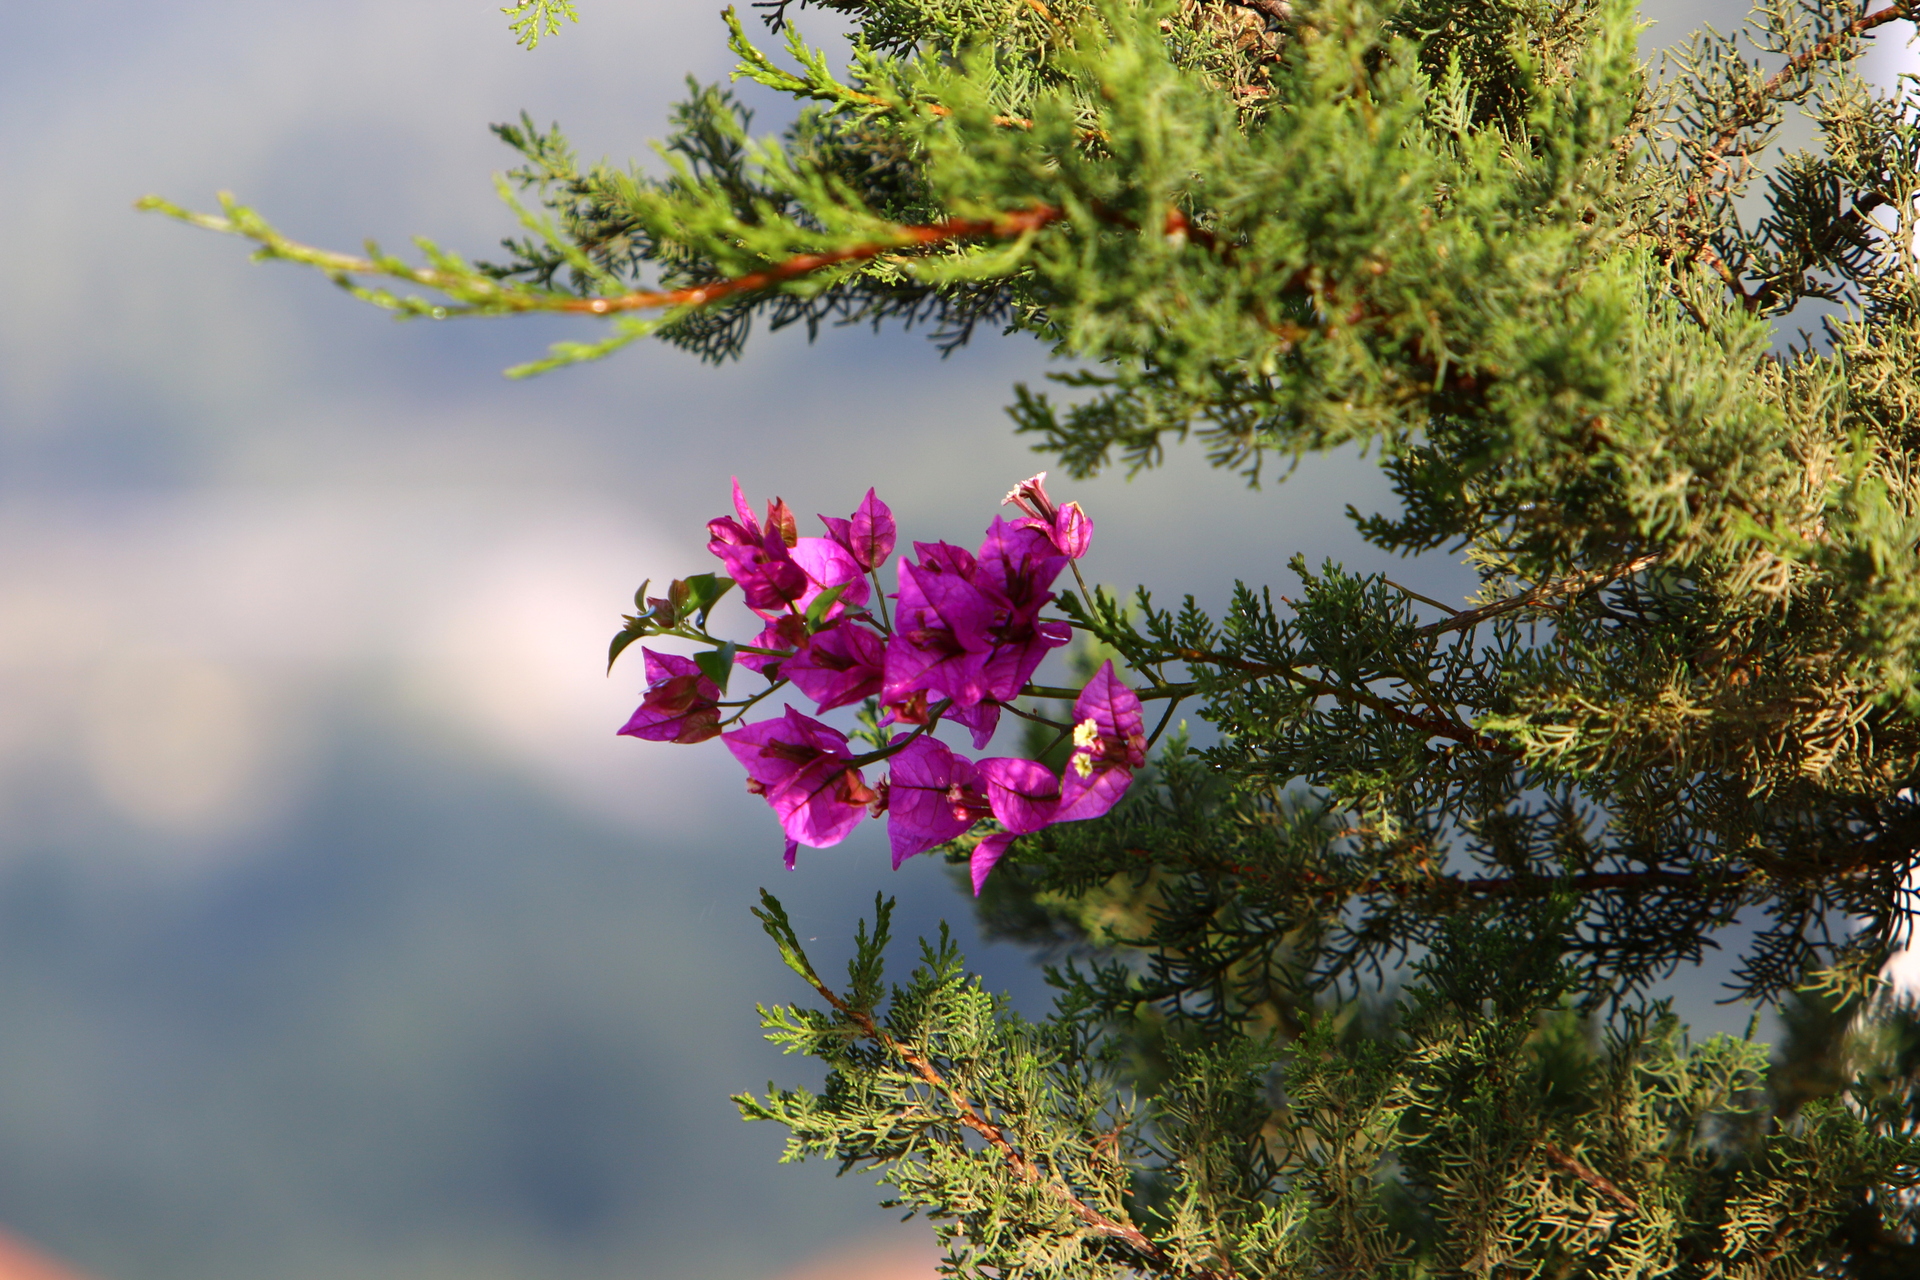 Na zdjęciu widać piękny kwiat fuksji o intensywnym fioletowym kolorze, który jest umieszczony na tle gałązek tiu. Kwiat ma charakterystyczny kształt z pięcioma płatkami, a jego delikatna struktura i intensywny kolor przyciągają uwagę. Zdjęcie przedstawia kwiat fuksji jako niezwykłą i elegancką roślinę ozdobną, która może stanowić piękny element dekoracyjny w domu lub ogrodzie. Obrazek może stanowić inspirację dla miłośników kwiatów i roślin, którzy chcą poszerzać swoją wiedzę na temat różnorodności roślin i ich piękna. Kwiat fuksji to symbol miłości, delikatności i elegancji, który można podziwiać przez cały sezon wiosenno-letni.